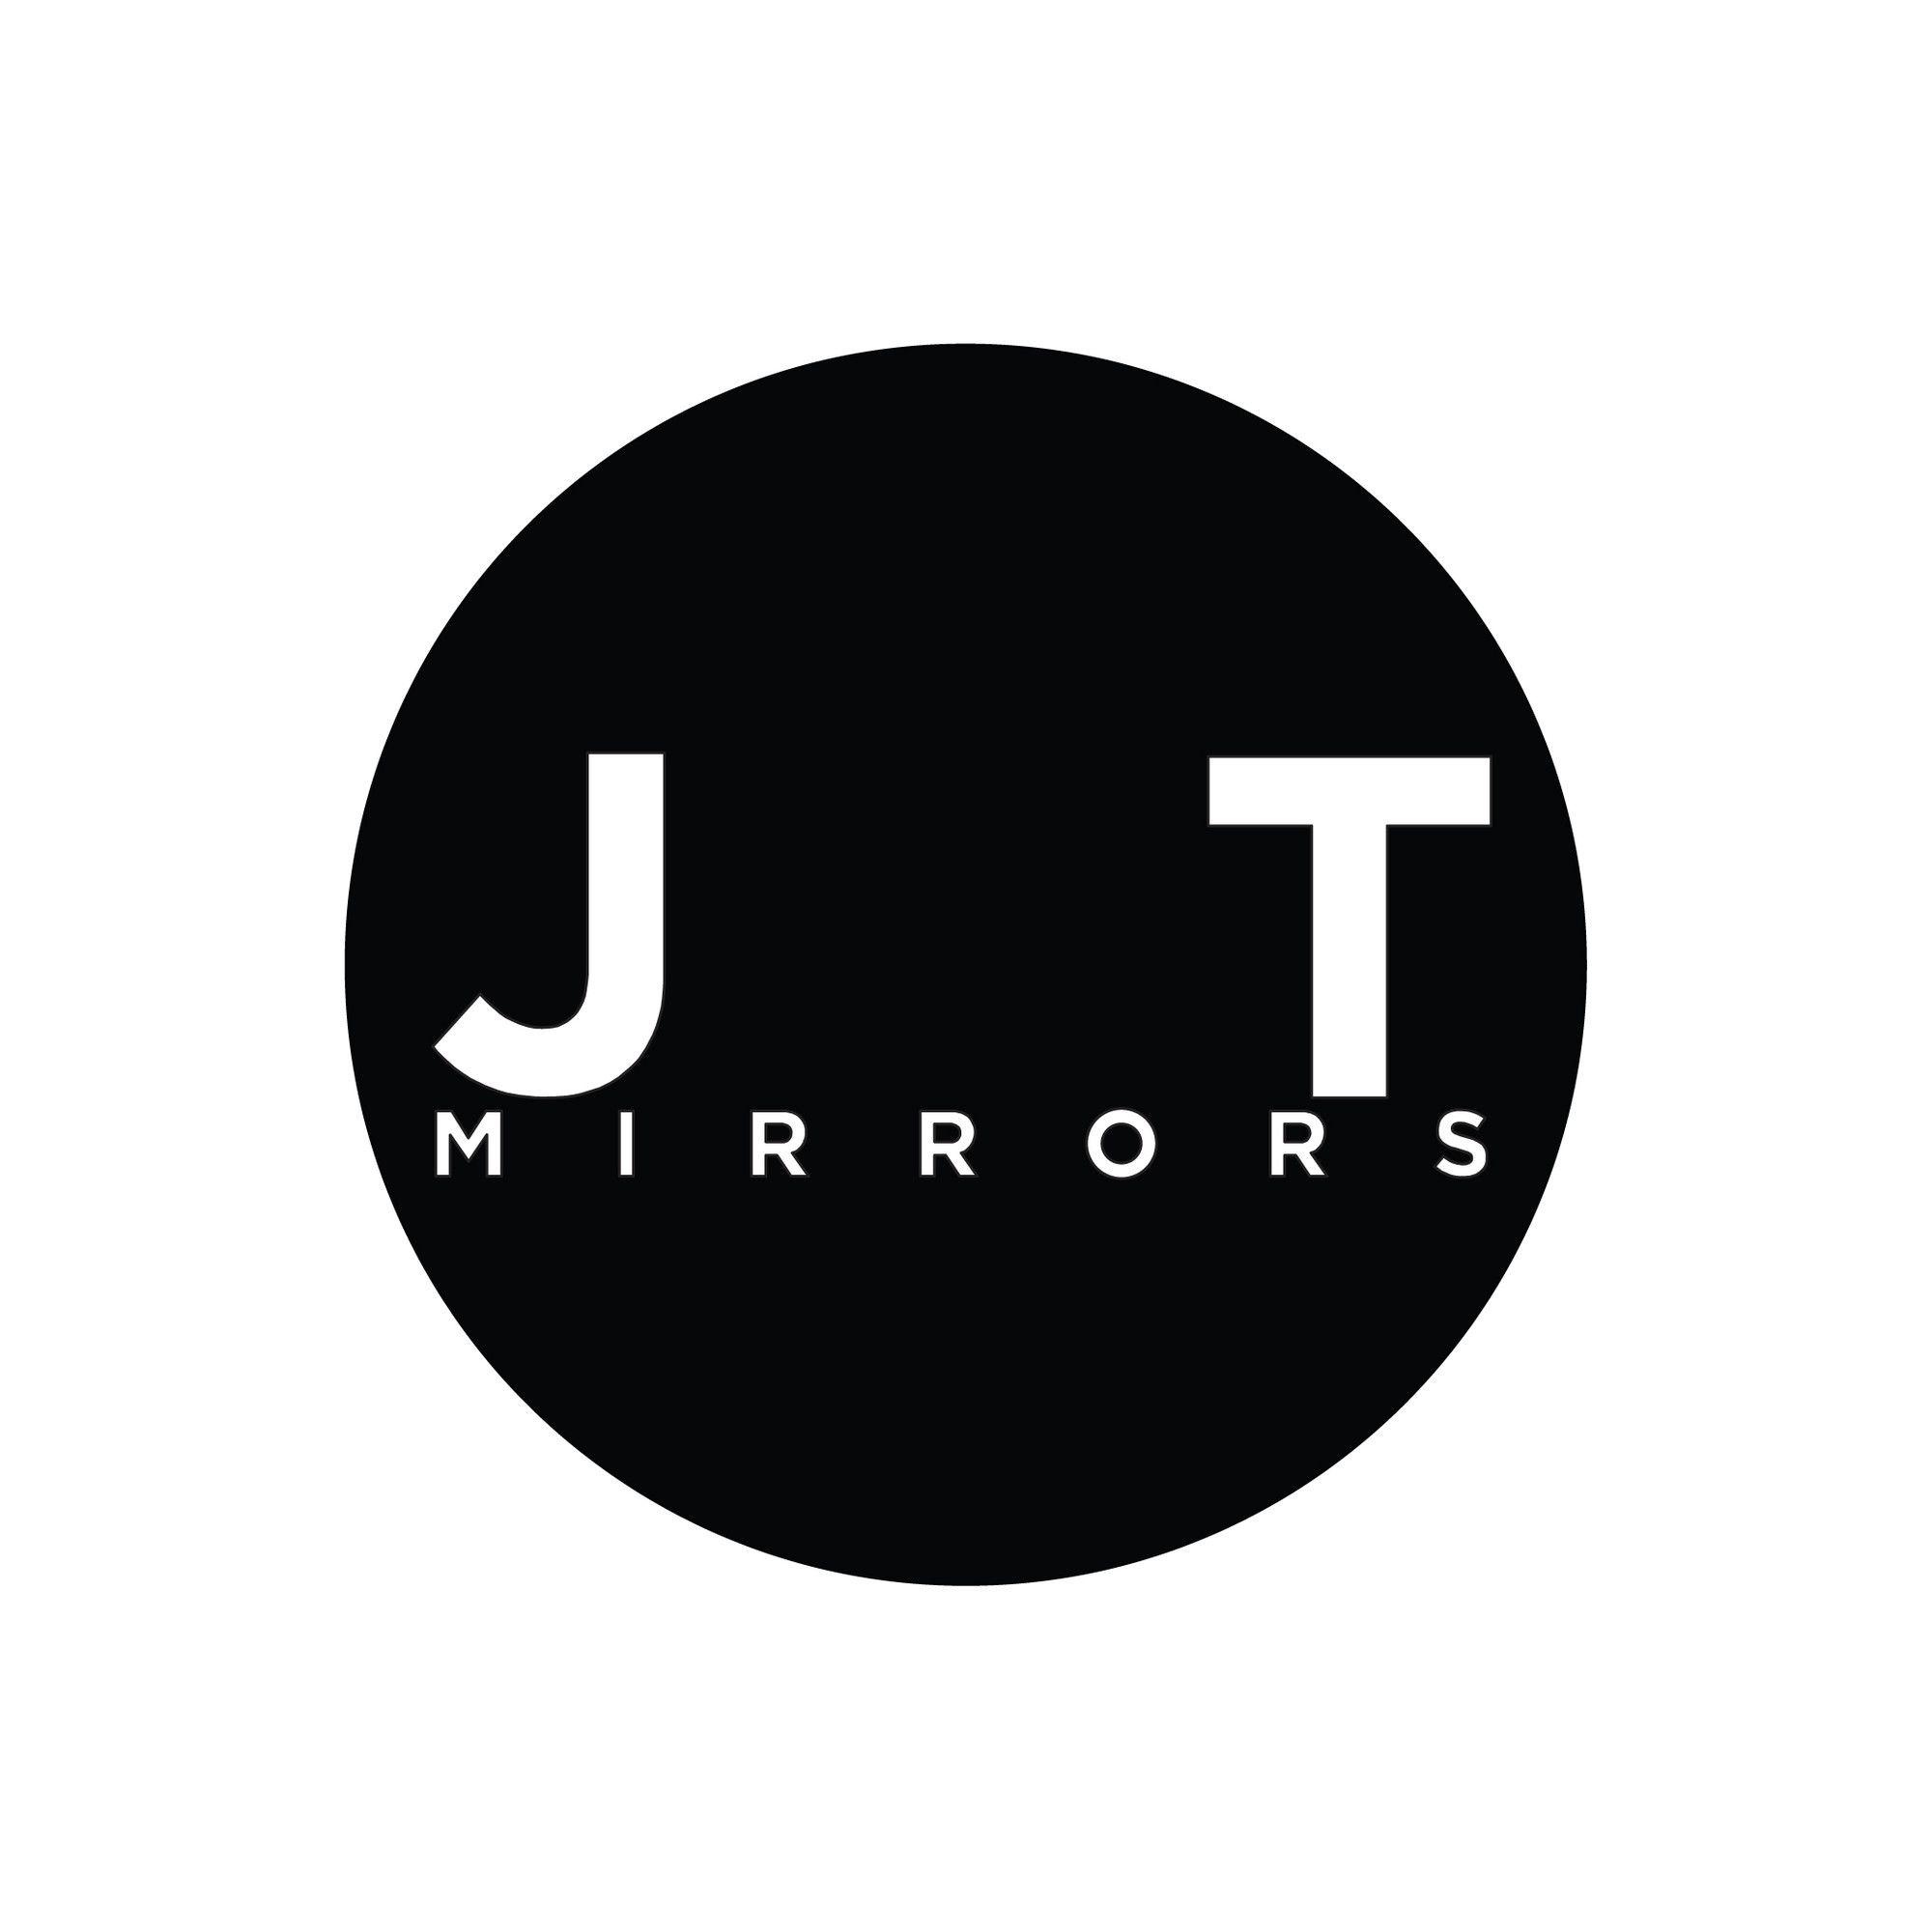 Justin Timberlake Logo - Gallery of INTERIORS: Justin Timberlake's 